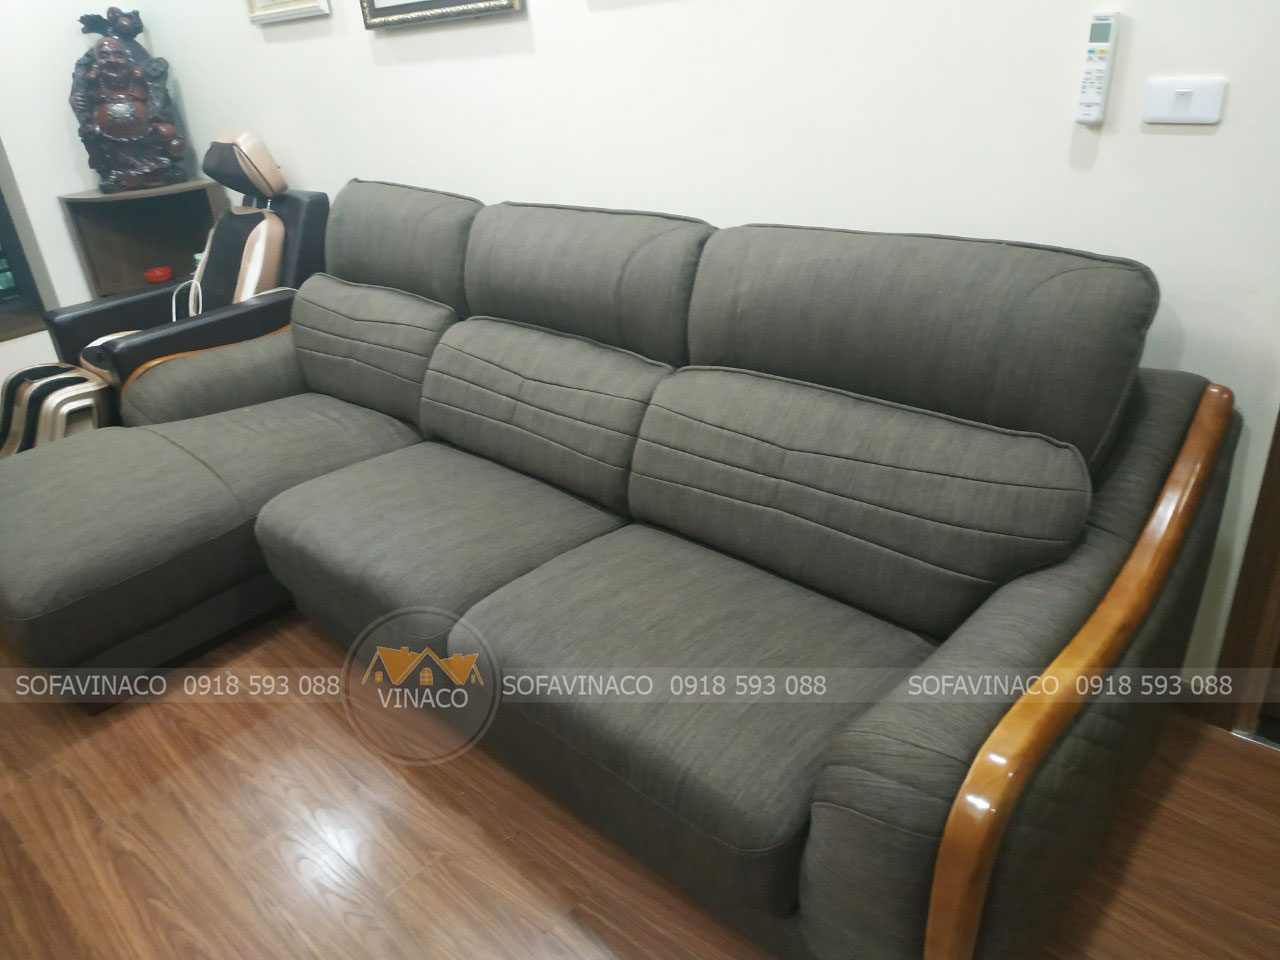 Giải pháp bọc ghế sofa vải bền đẹp như mới